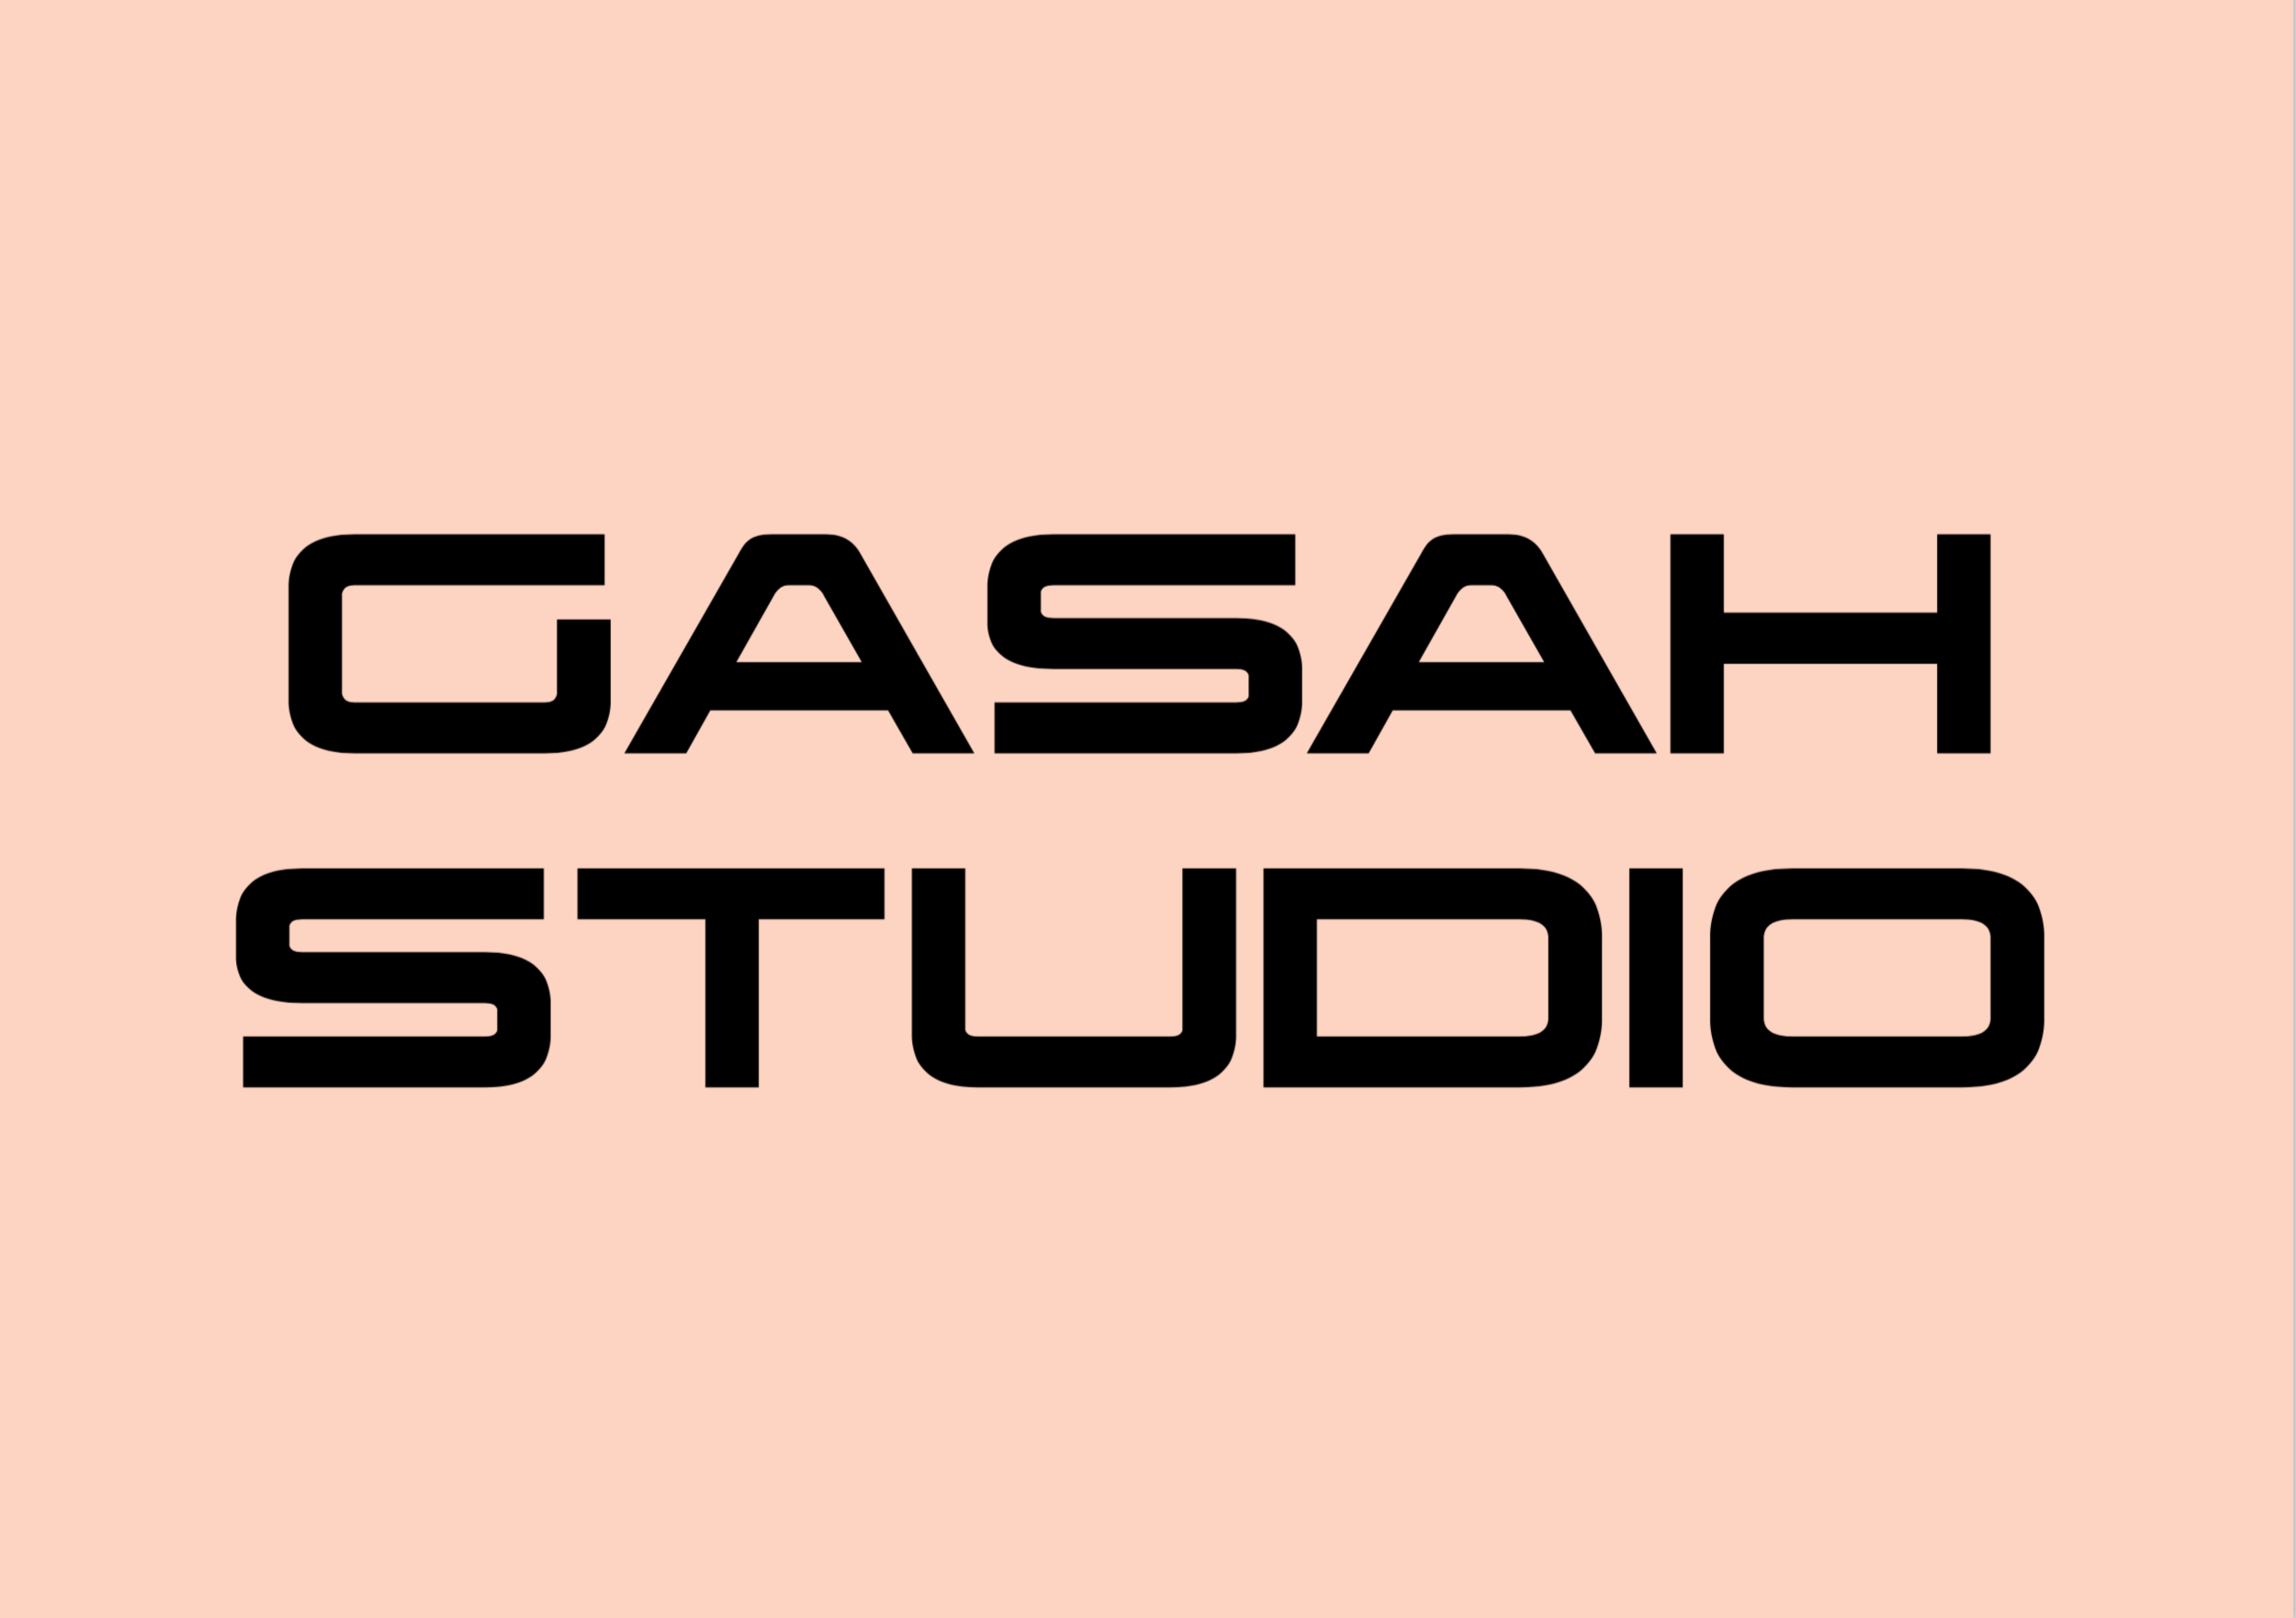 GASAH STUDIO